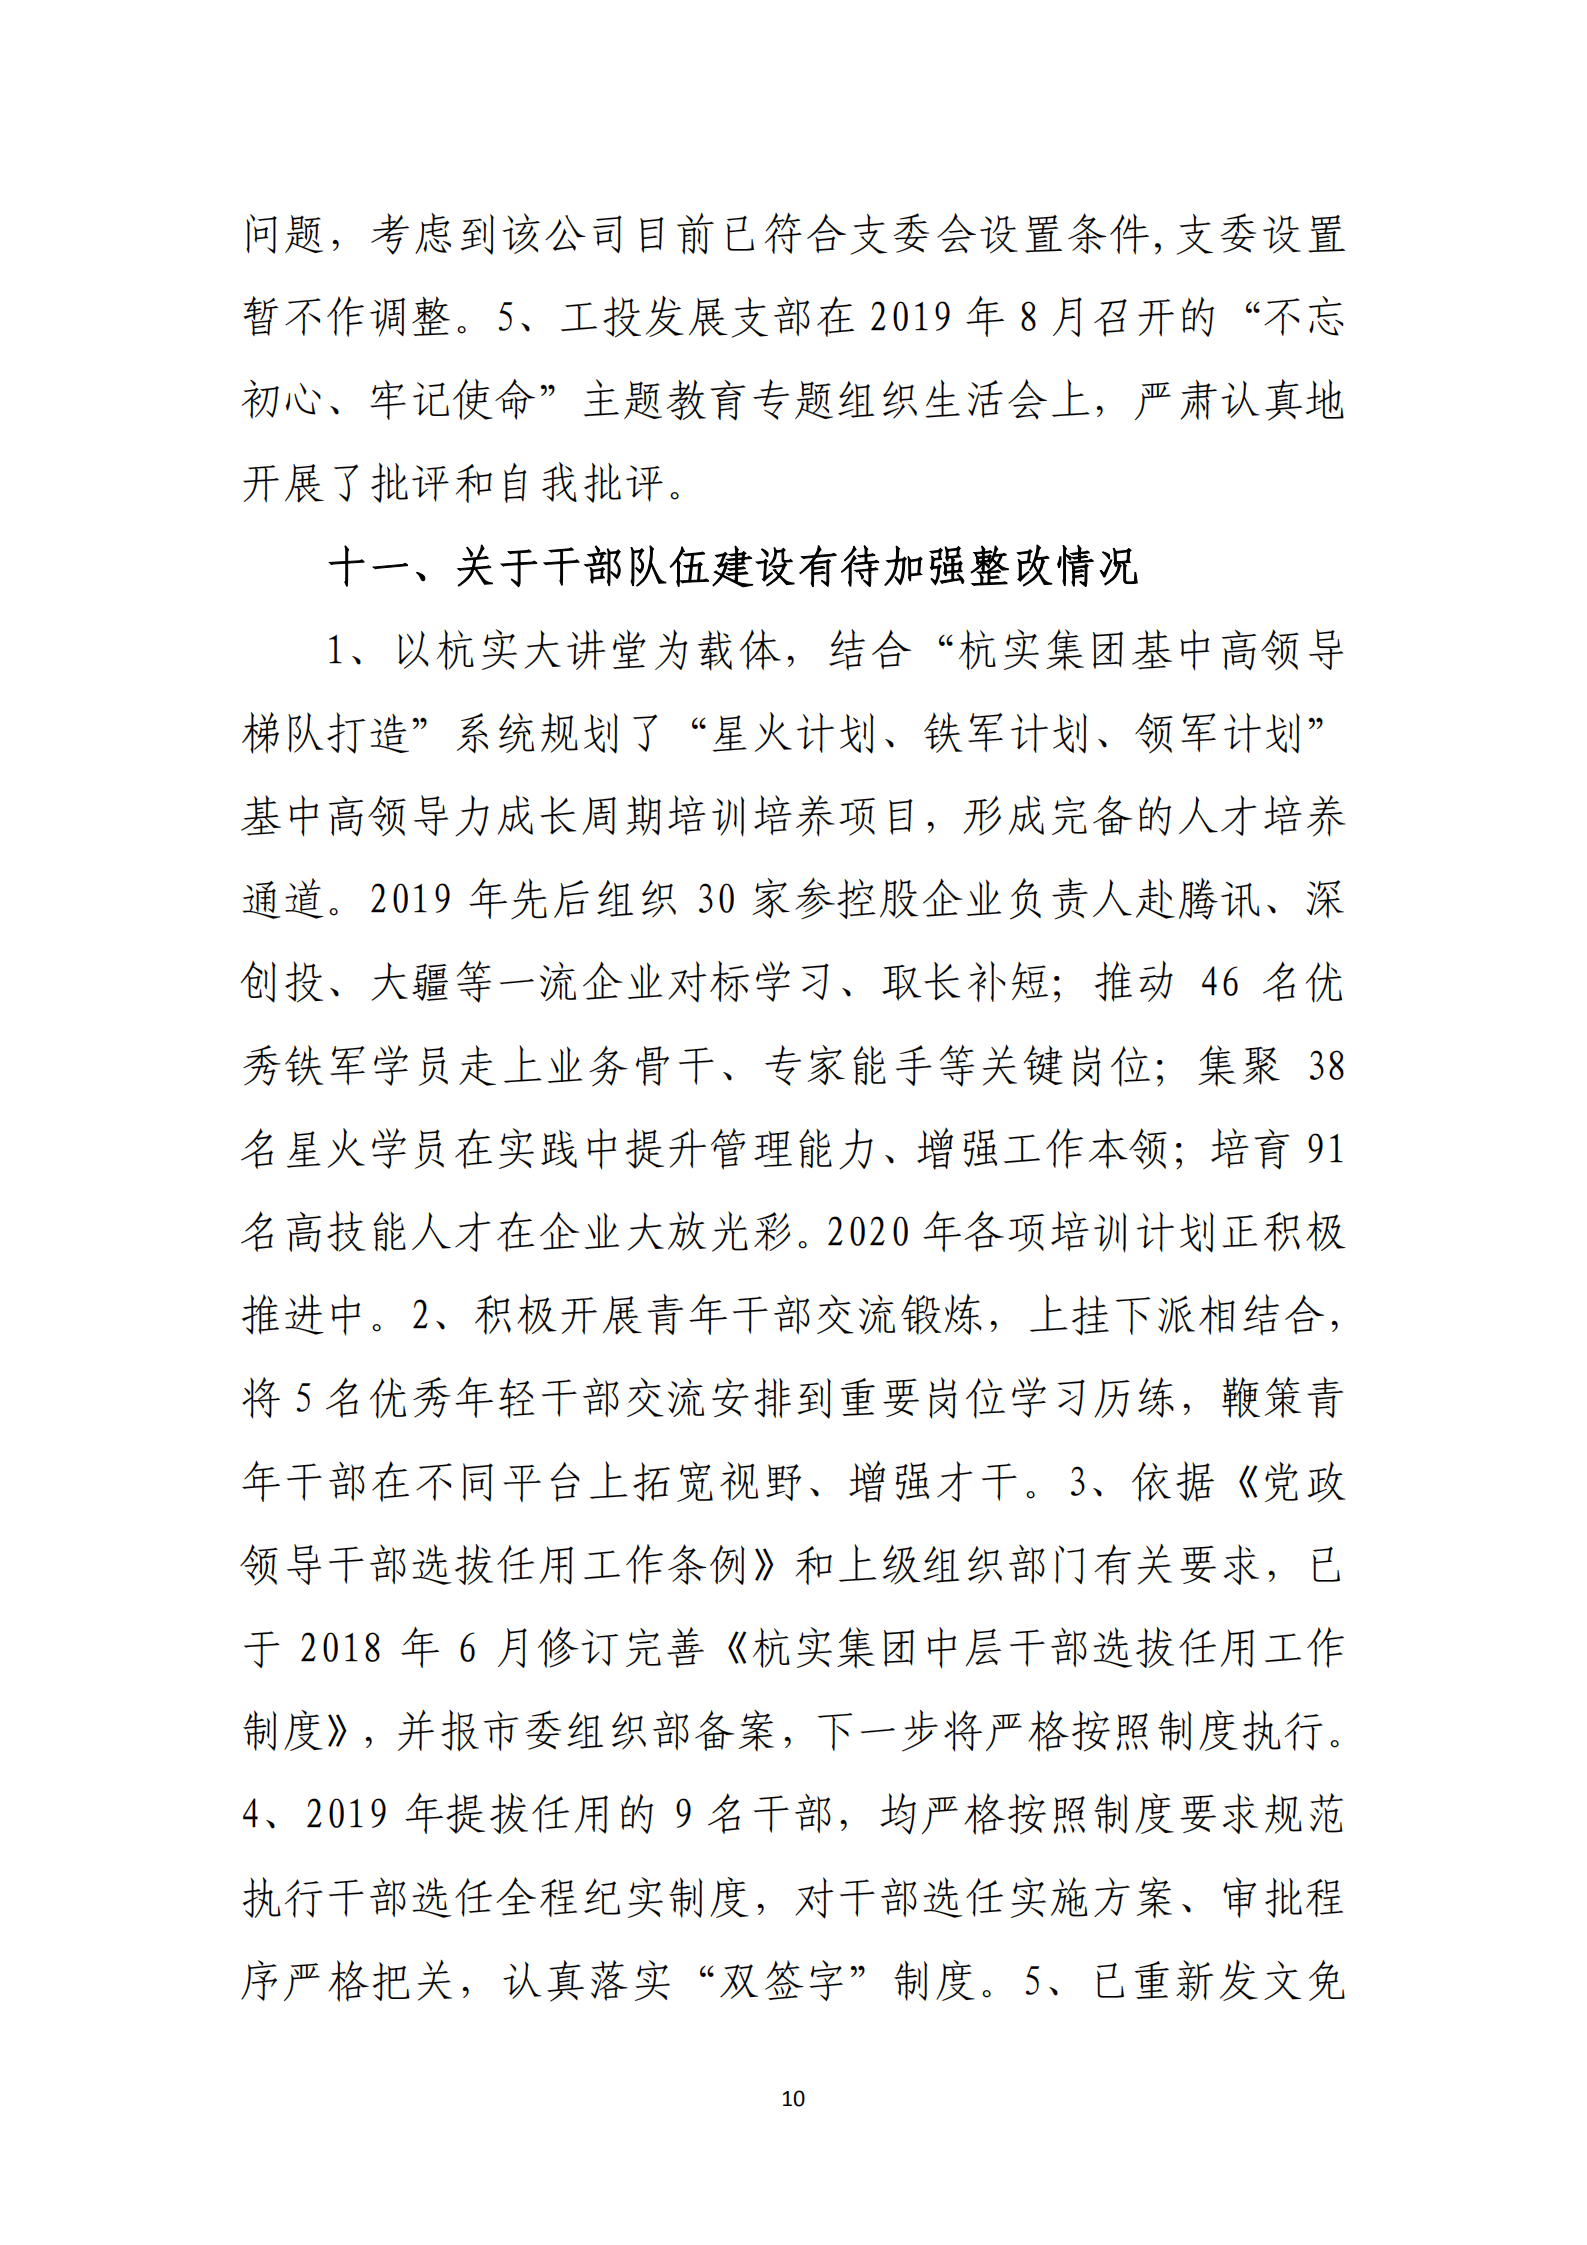 乐虎国际游戏官网党委关于巡察整改情况的通报_09.png